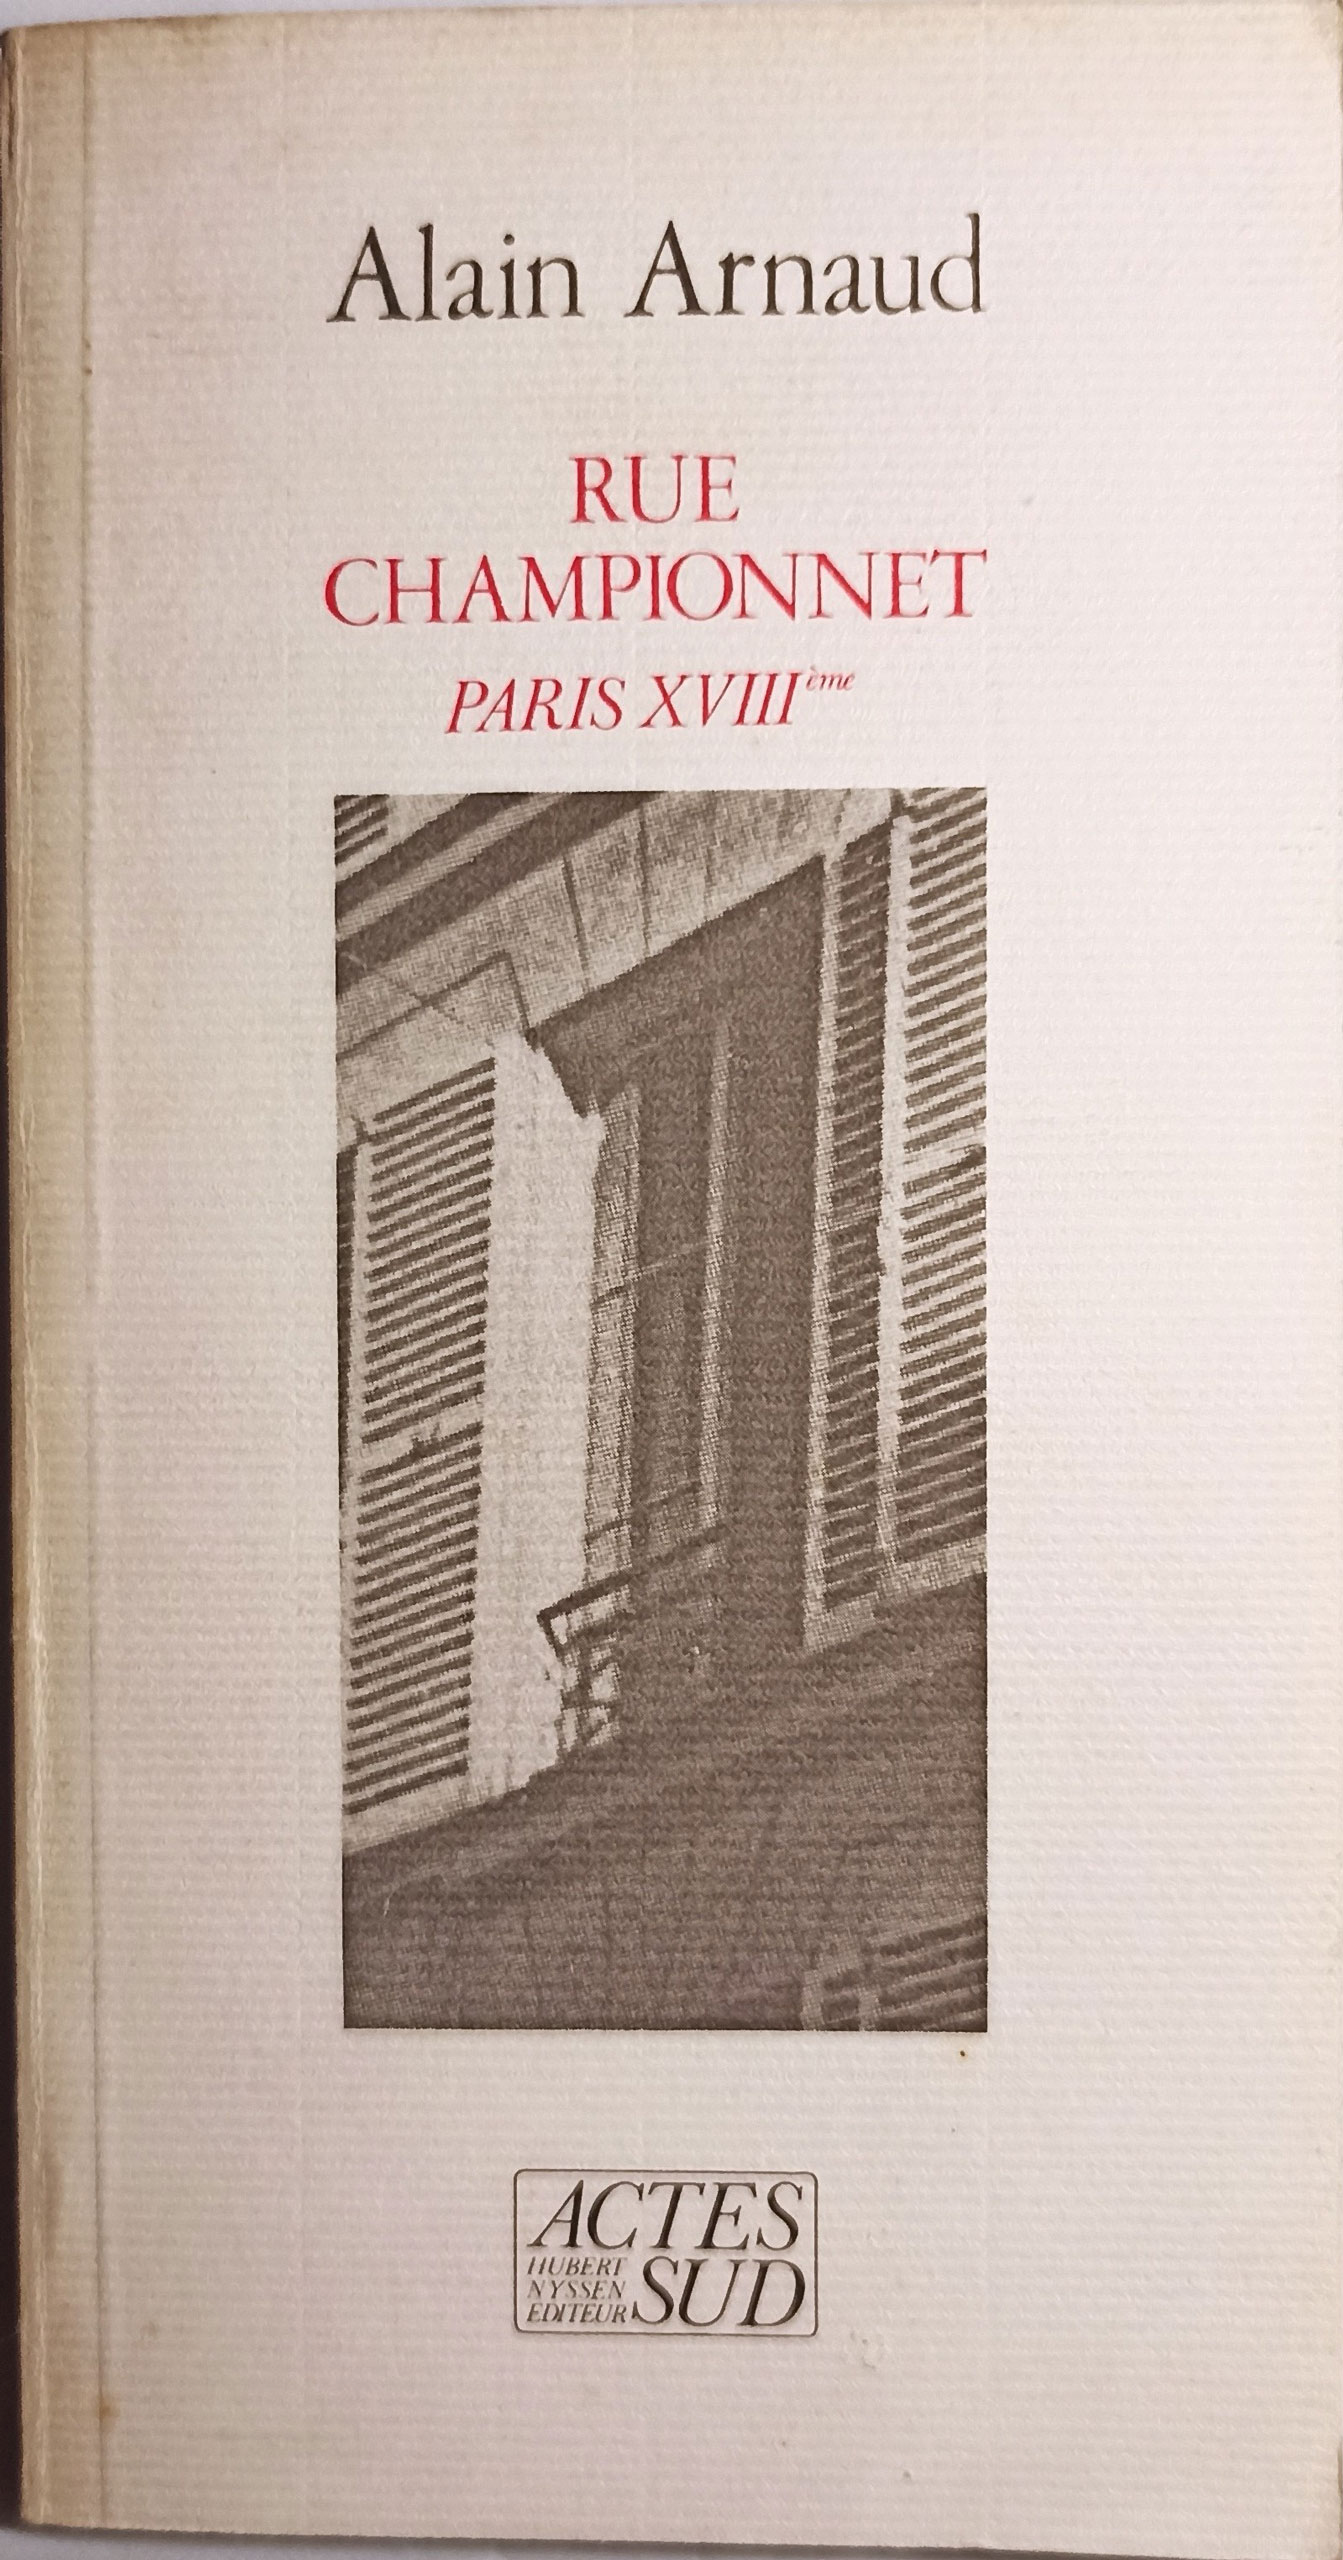 Rue Championnet Paris XVIIIe, le livre sur « Marcelle P » qu’Alain Arnaud fit paraître chez Actes sud, en 1986, un an après la découverte du corps de Marcelle Pichon.